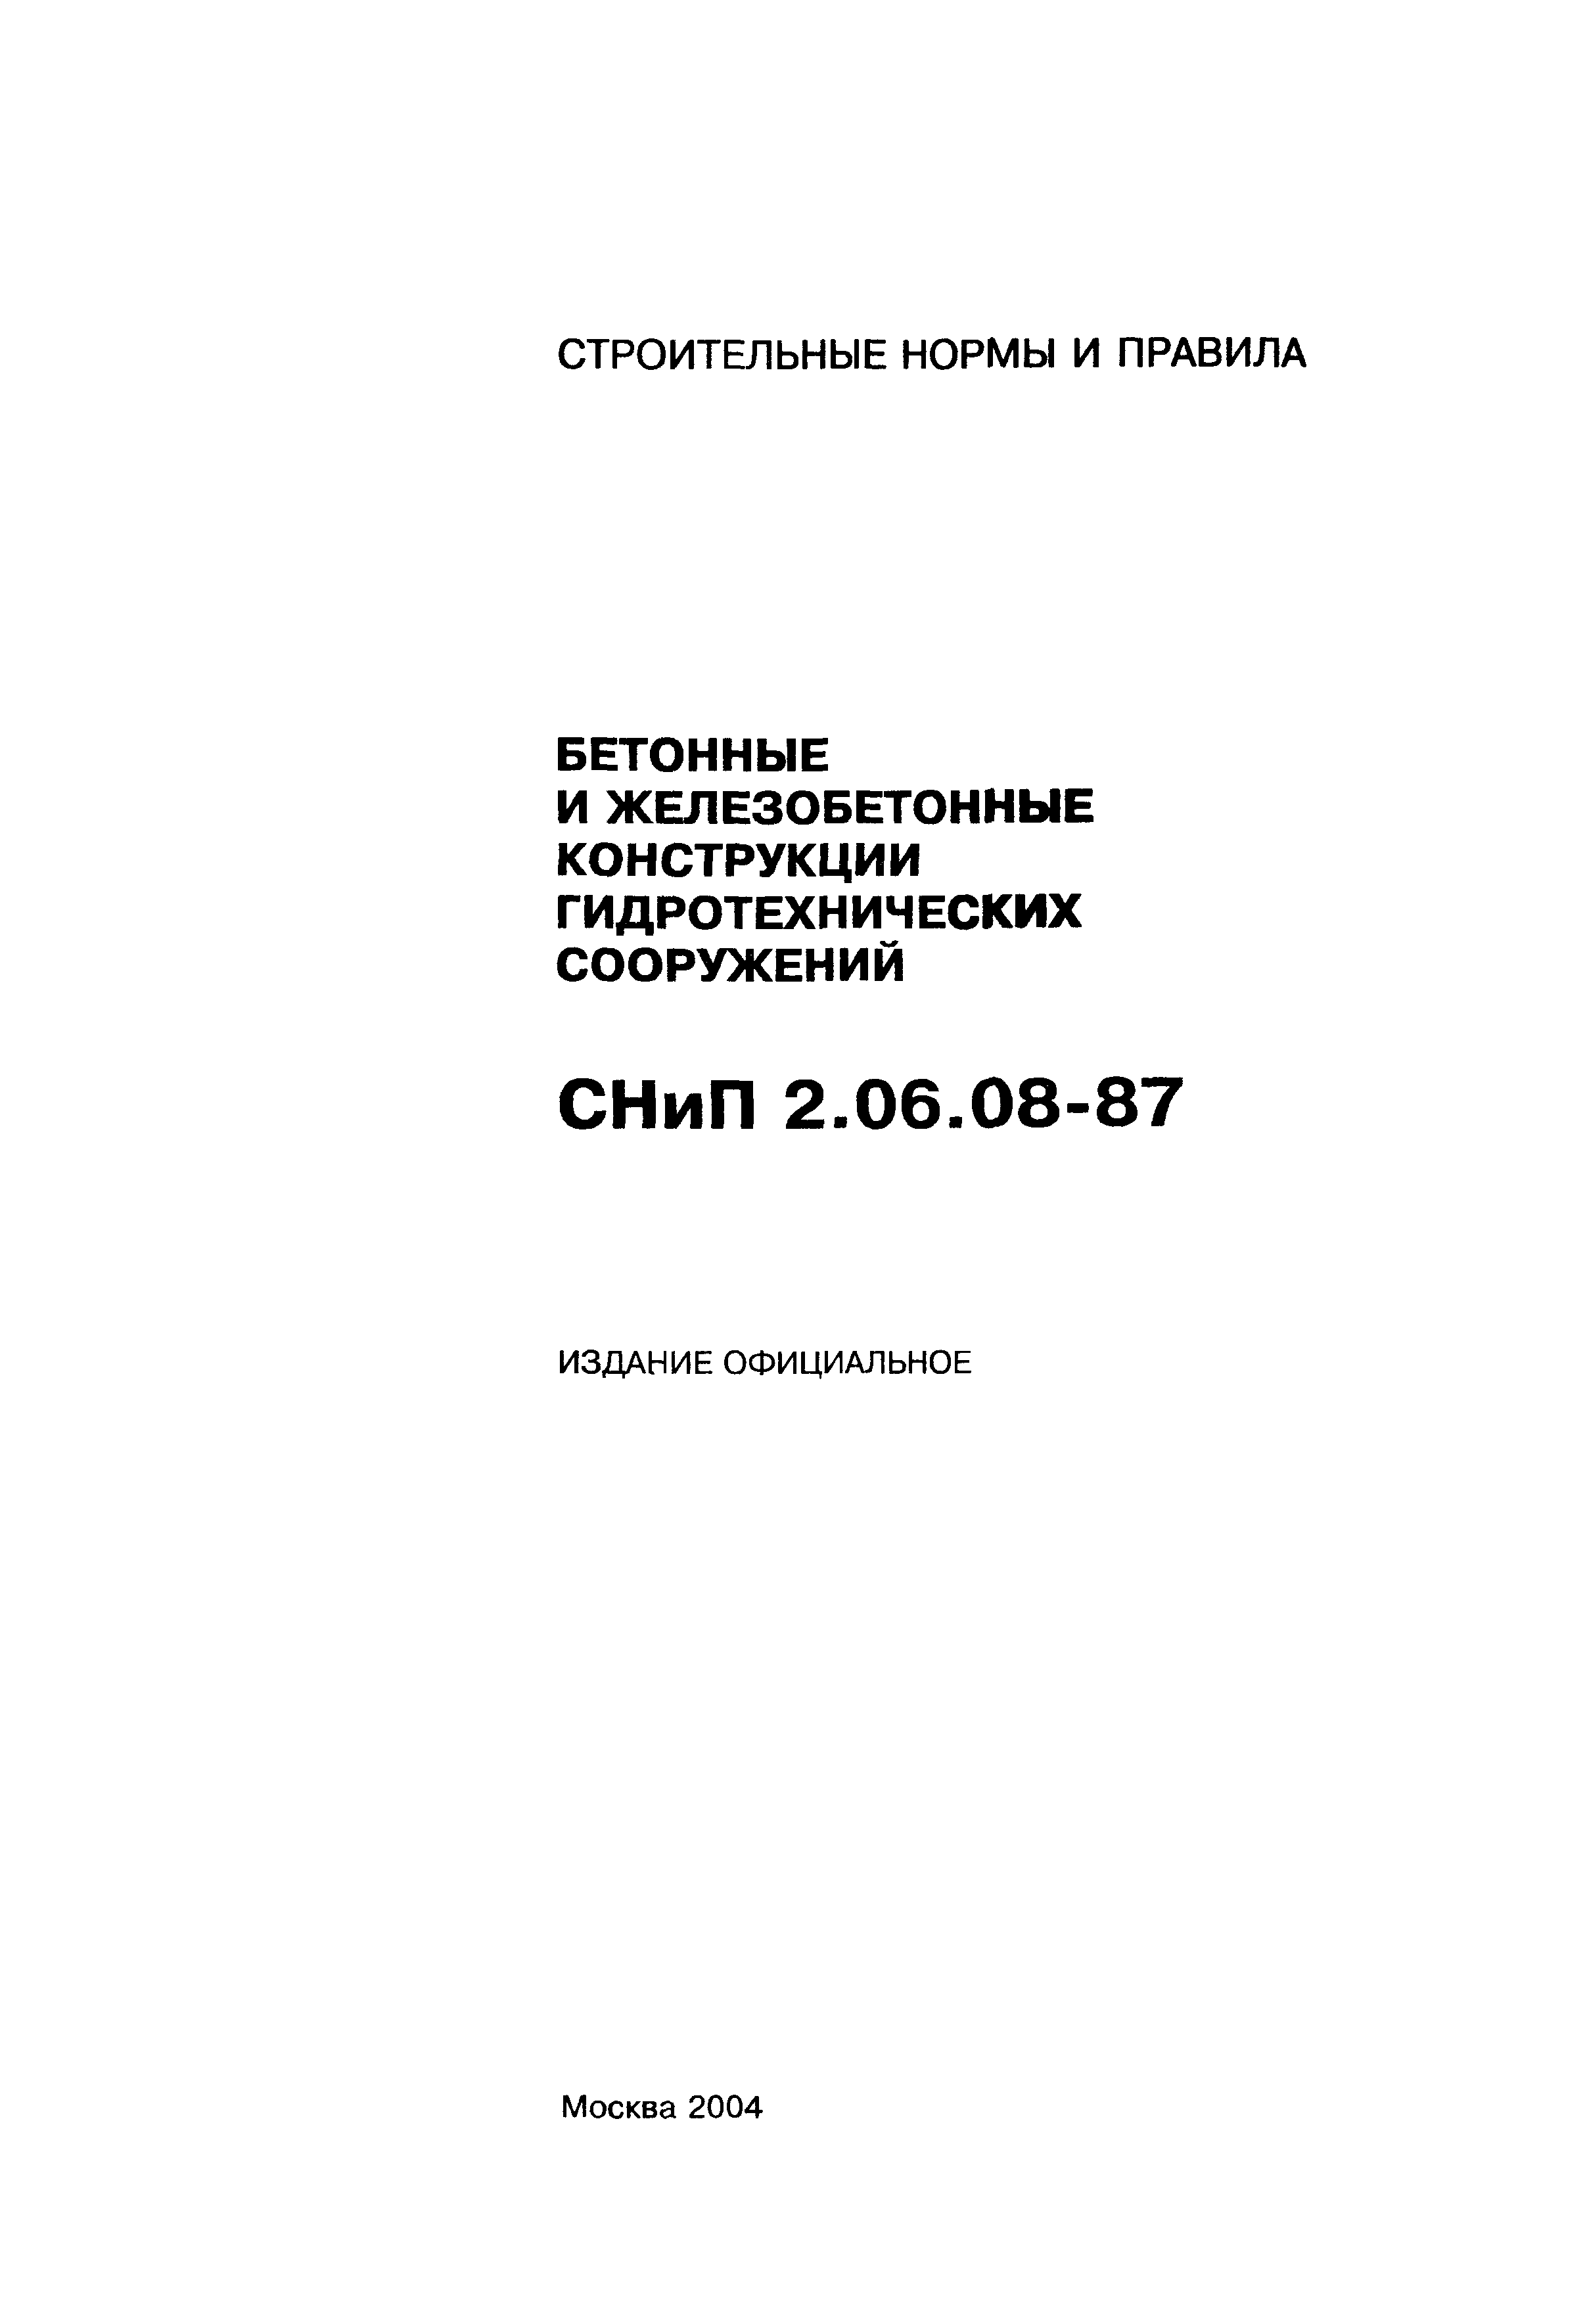 СНиП 2.06.08-87